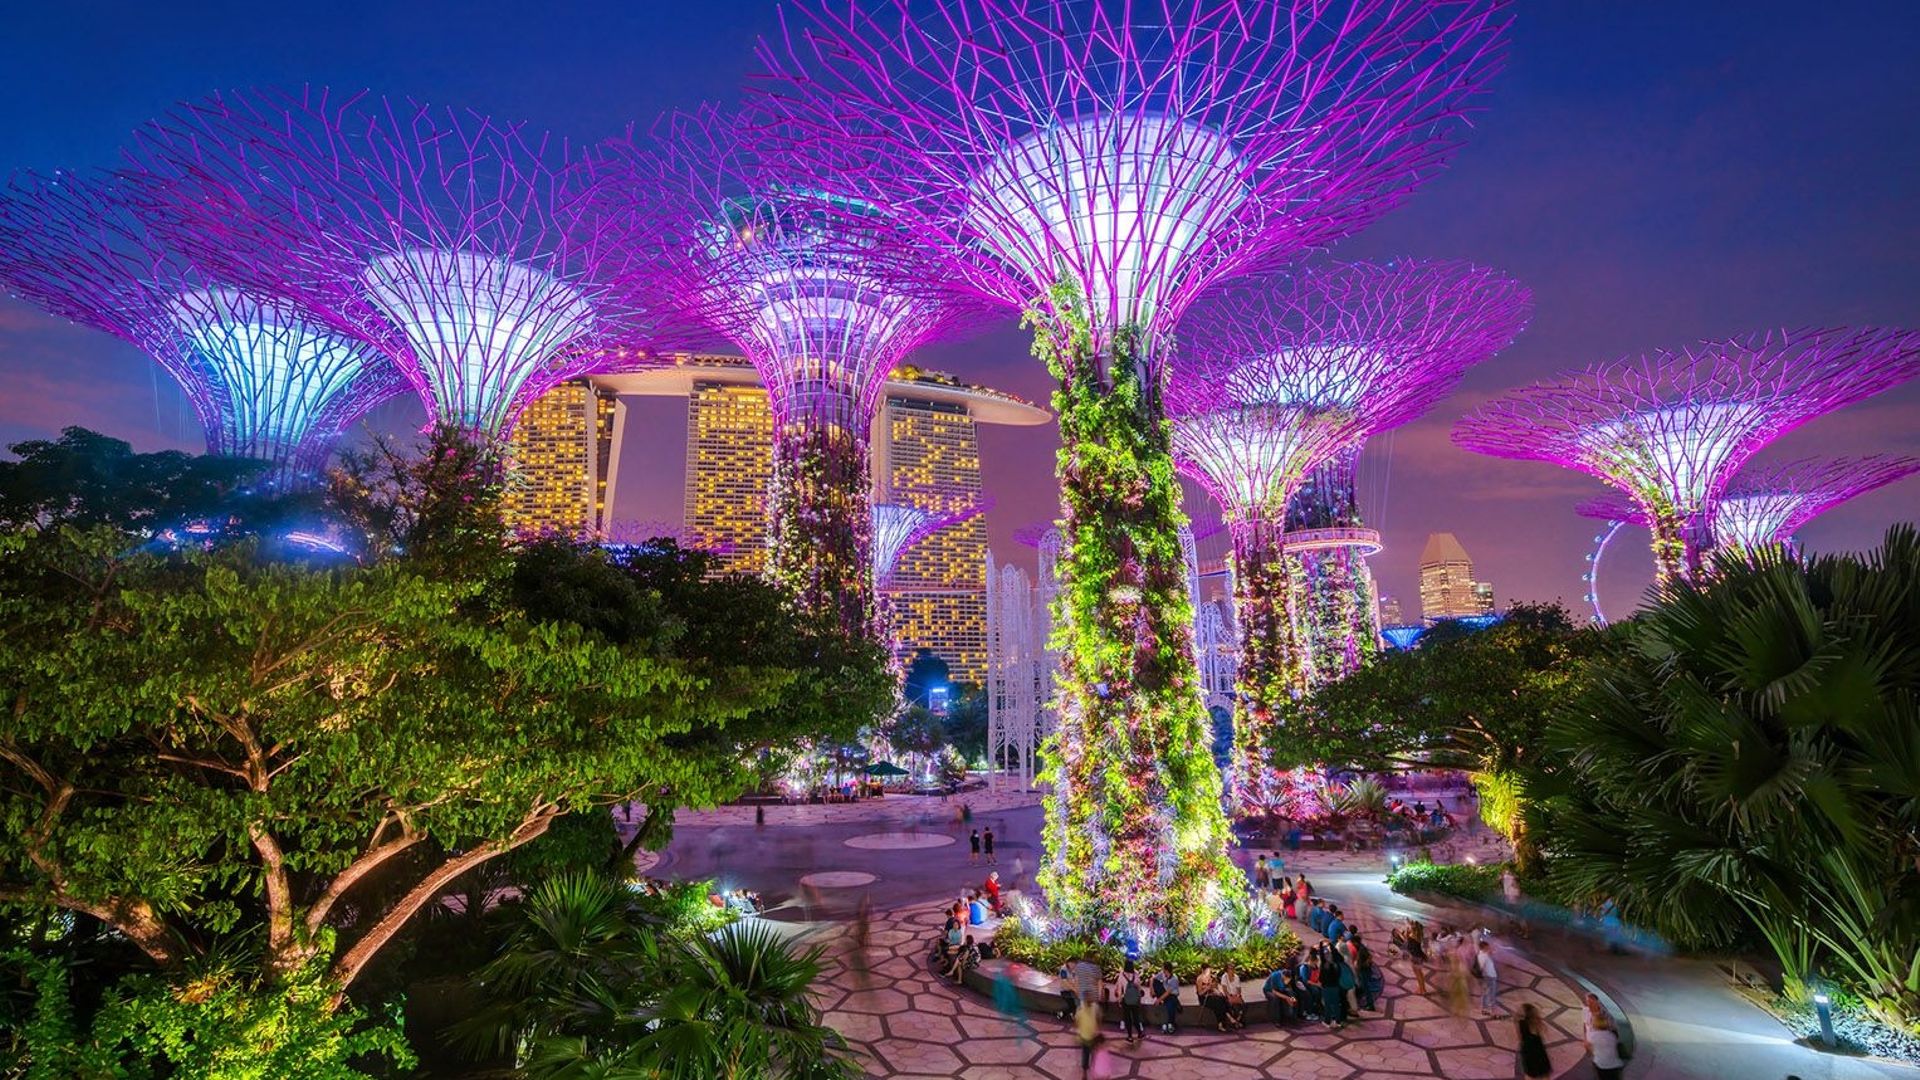 Les résidents de Singapour ne craignent pas de se faire attaquer la nuit